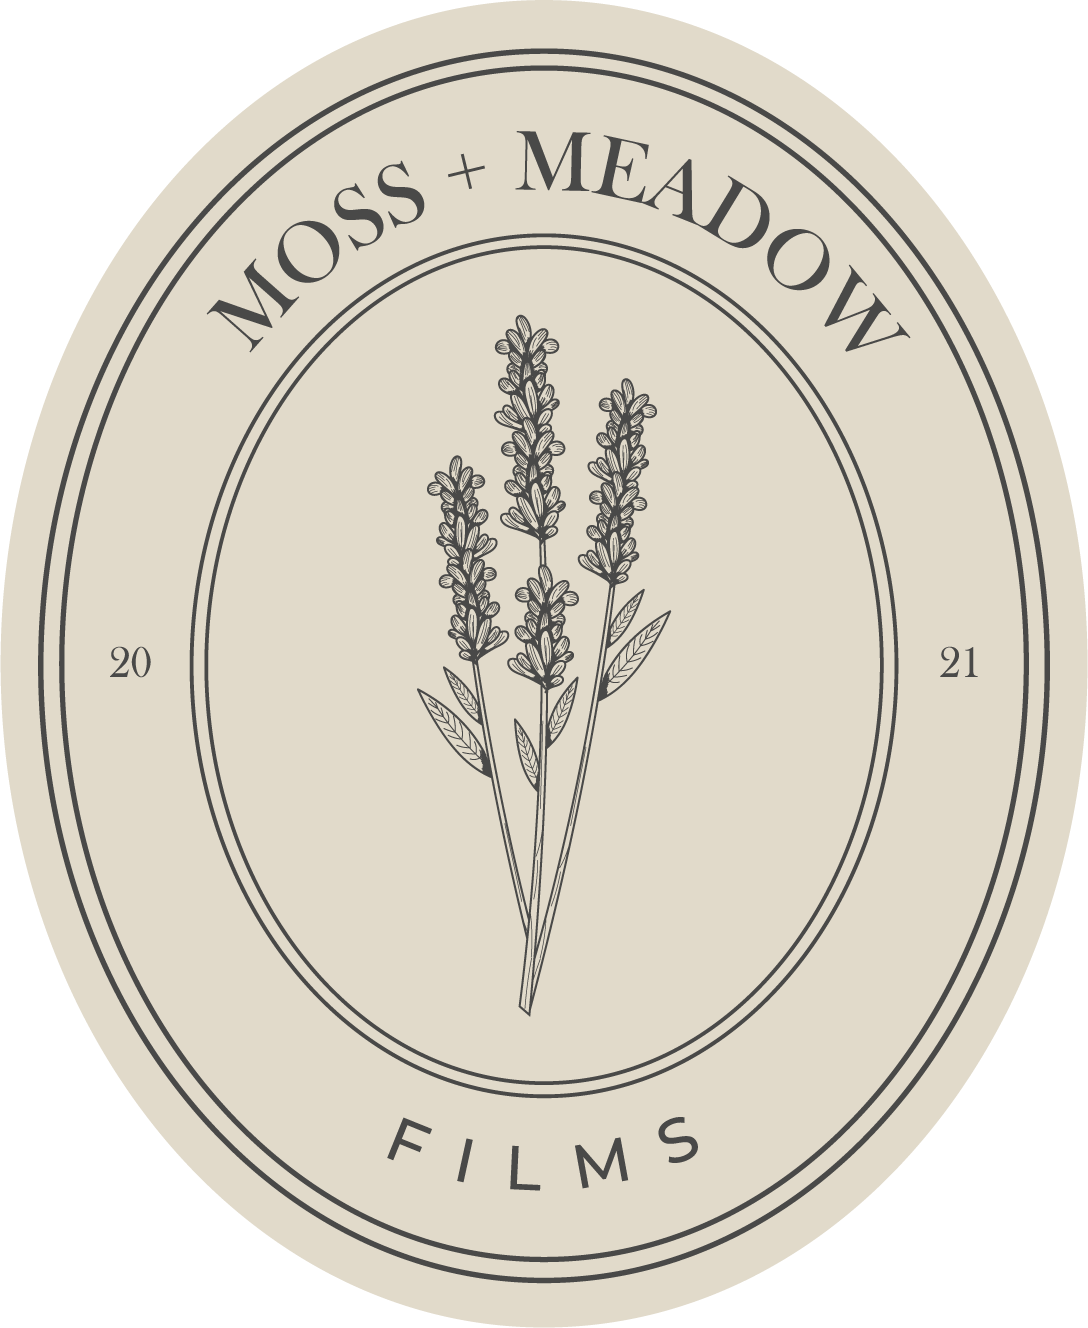 Moss &amp; Meadow Films